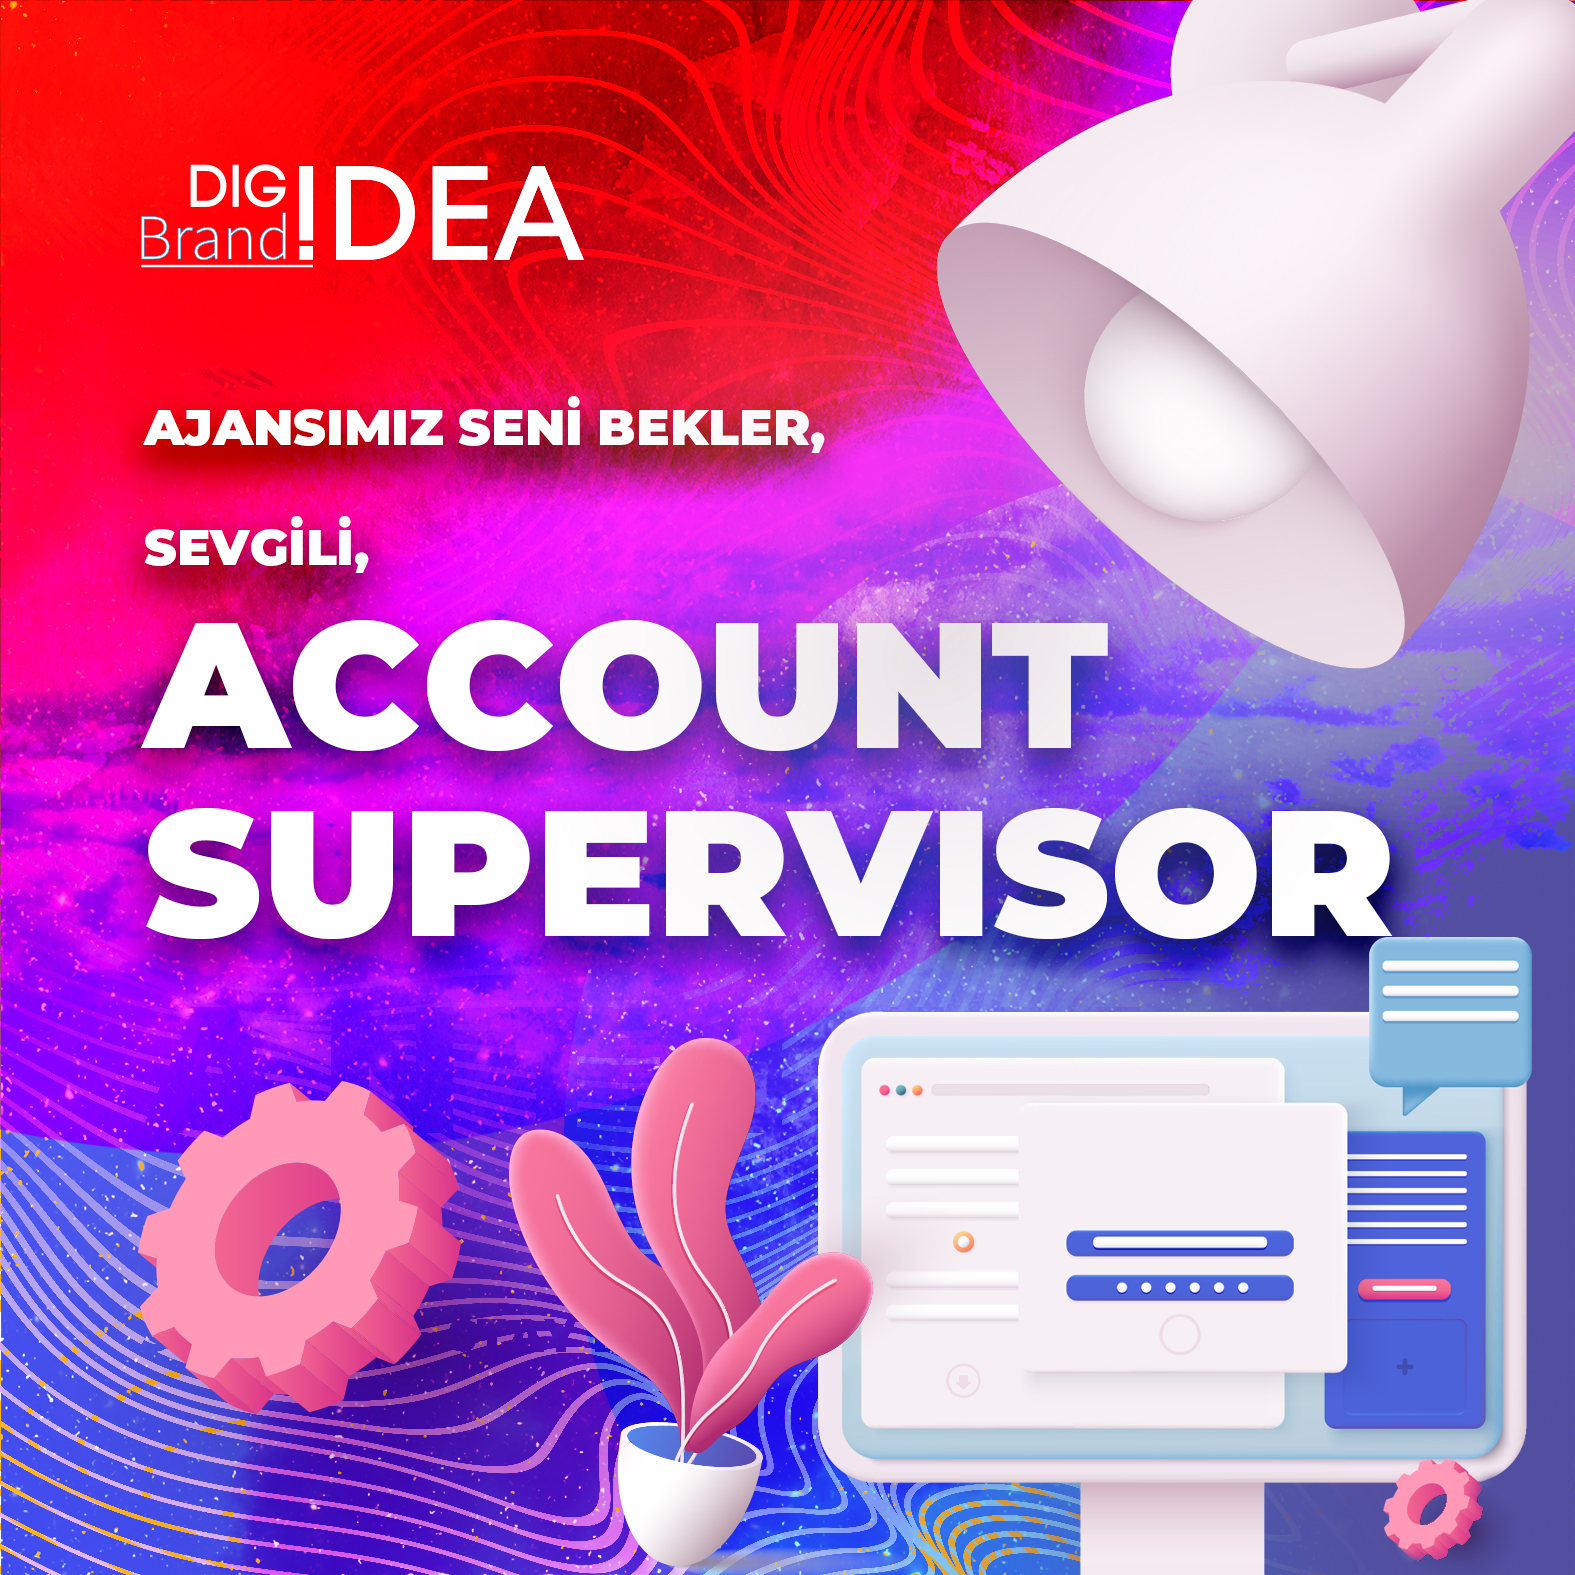 Idea Group Account Supervisor pozisyonu için seni bekliyor!